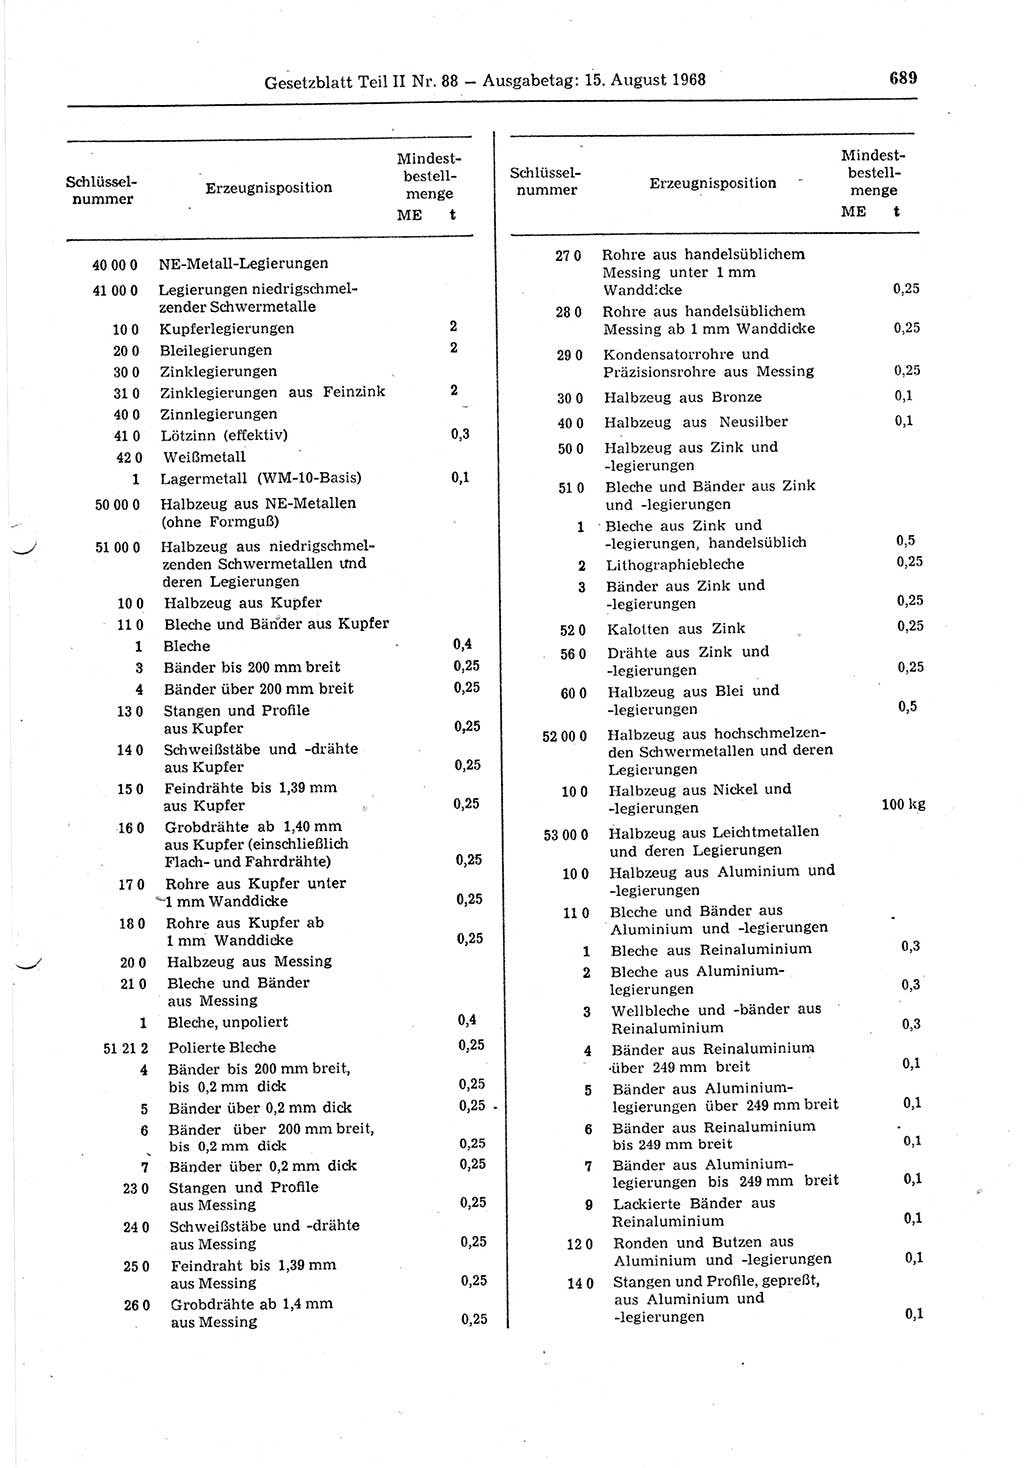 Gesetzblatt (GBl.) der Deutschen Demokratischen Republik (DDR) Teil ⅠⅠ 1968, Seite 689 (GBl. DDR ⅠⅠ 1968, S. 689)